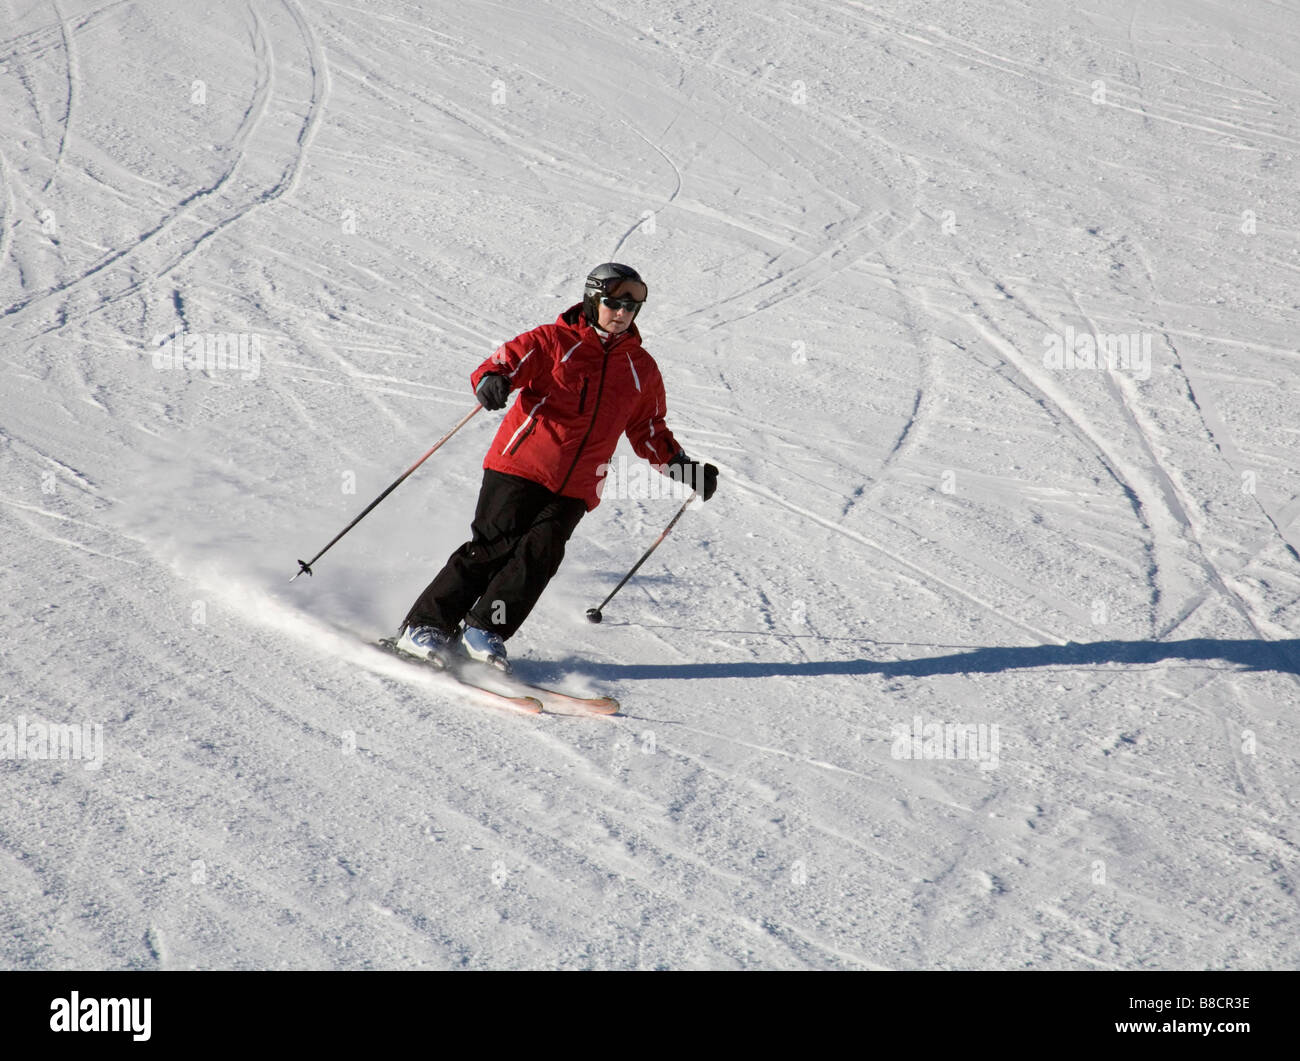 Nouvelle combinaison de Ski pour hommes femmes combinaison de Ski femme  veste de Ski et pantalon mâle hiver chaud imperméable coupe-vent Ski  snowboard